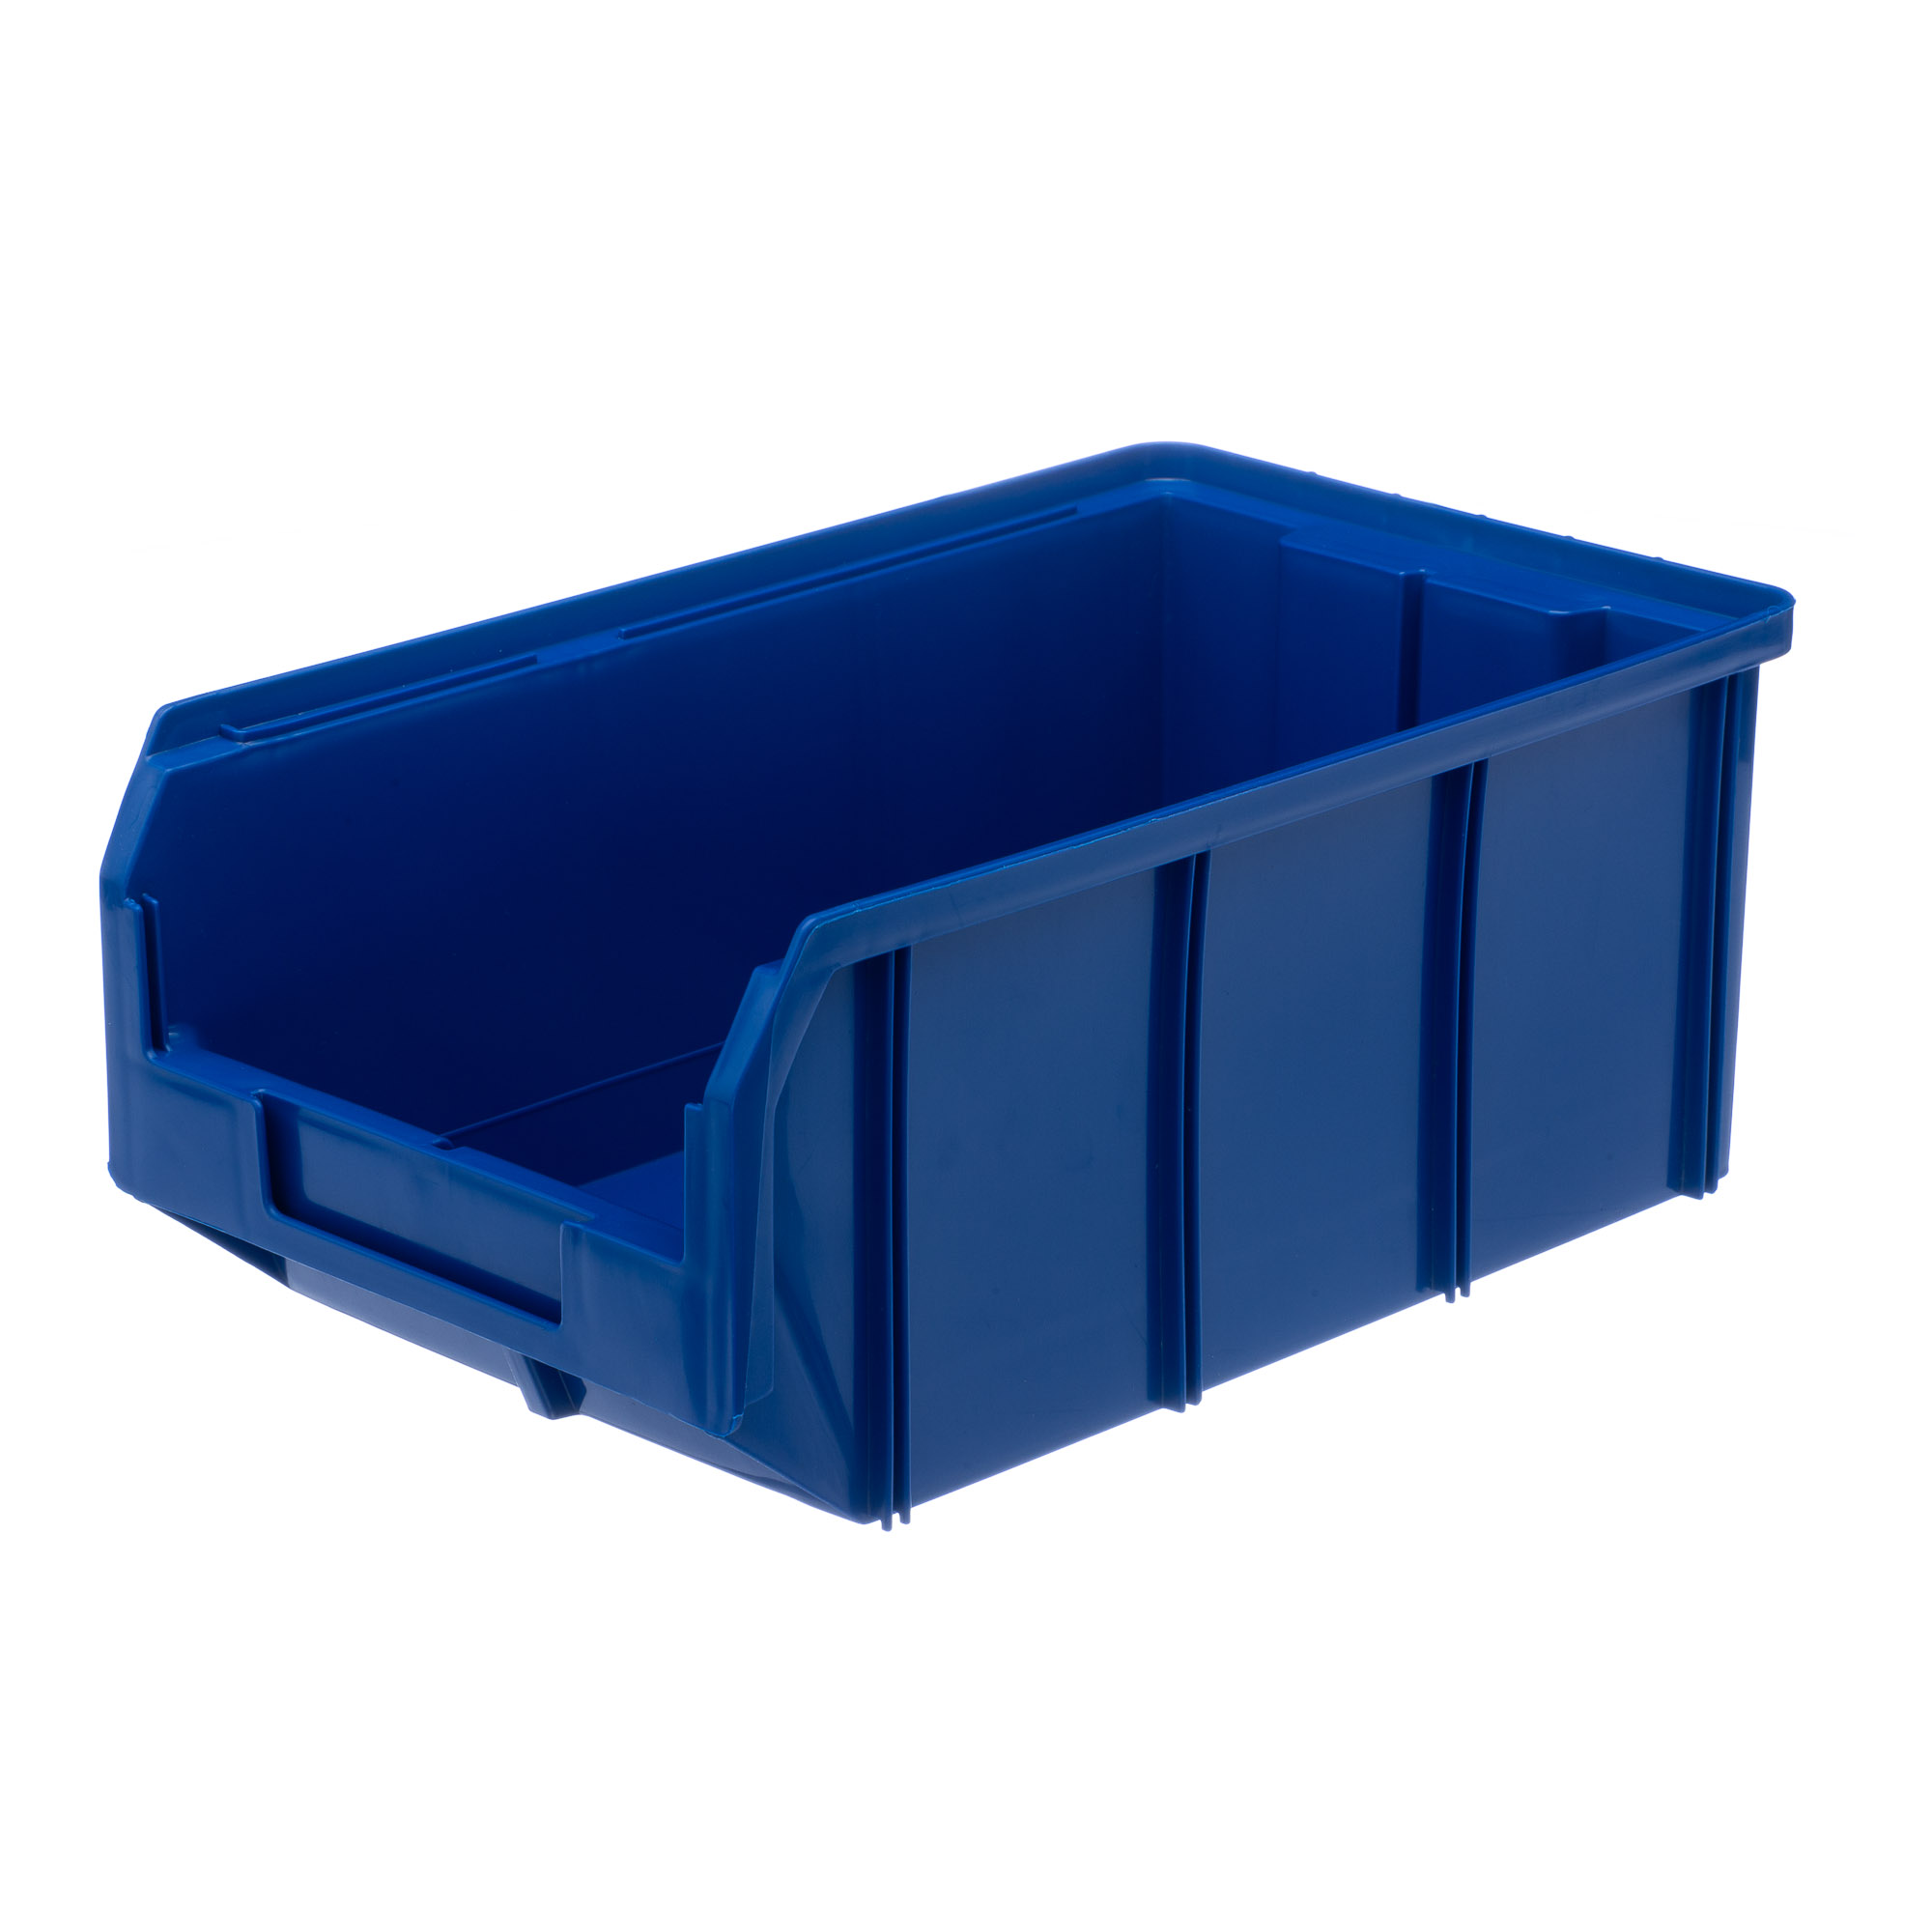 Пластиковый ящик Стелла-техник V-3-синий